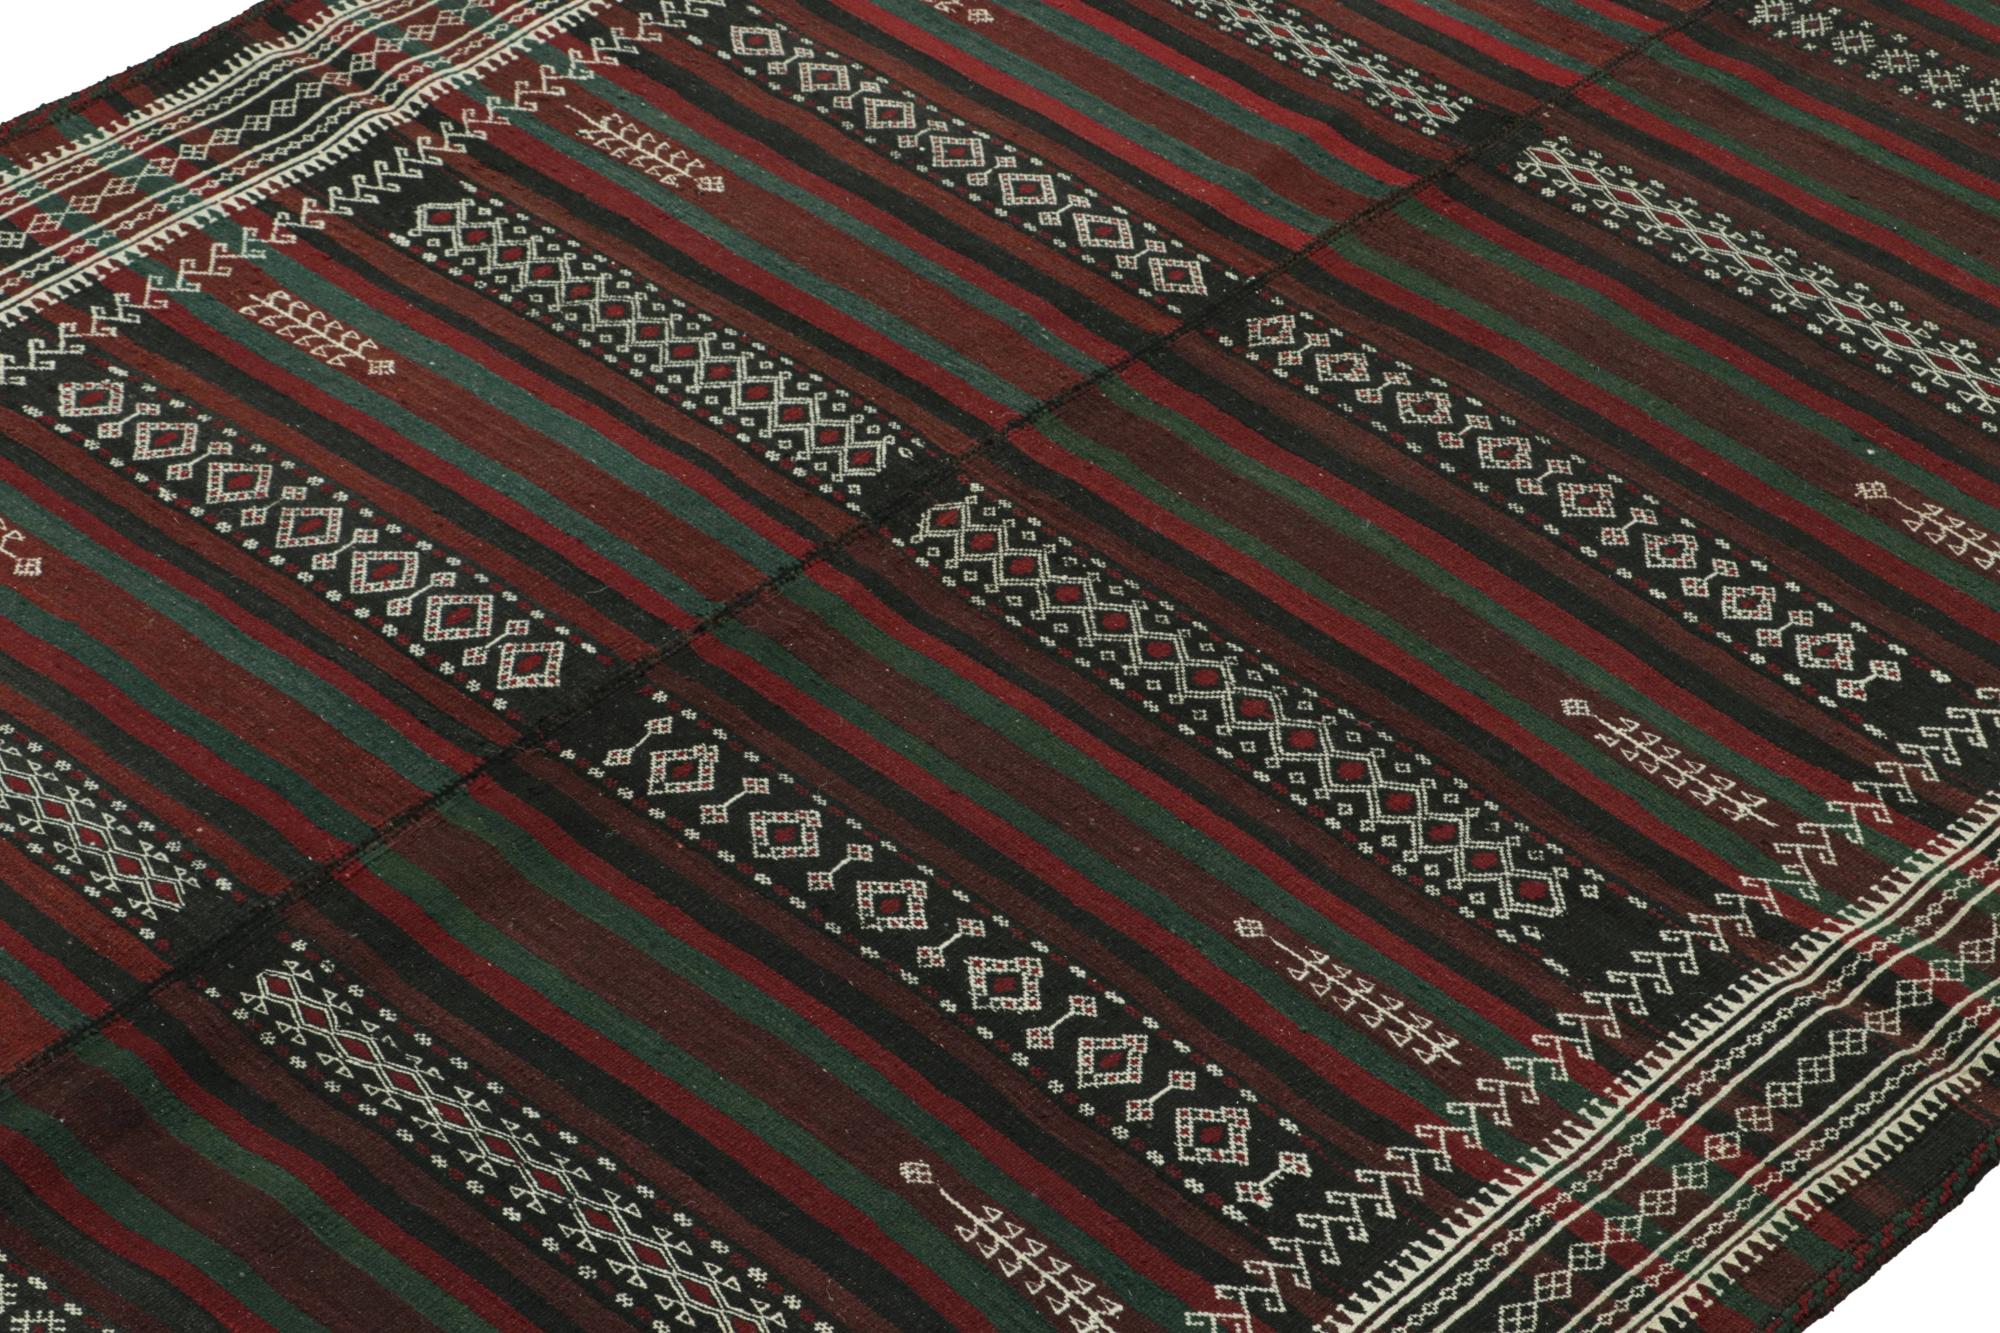 Noué à la main en laine vers 1950, ce Kilim persan vintage de 6x10 est un tapis tribal d'origine baloutche.

Sur le Design : 

Ce tissage plat présente des rayures et des motifs géométriques nets et finement tissés dans une riche palette de marrons